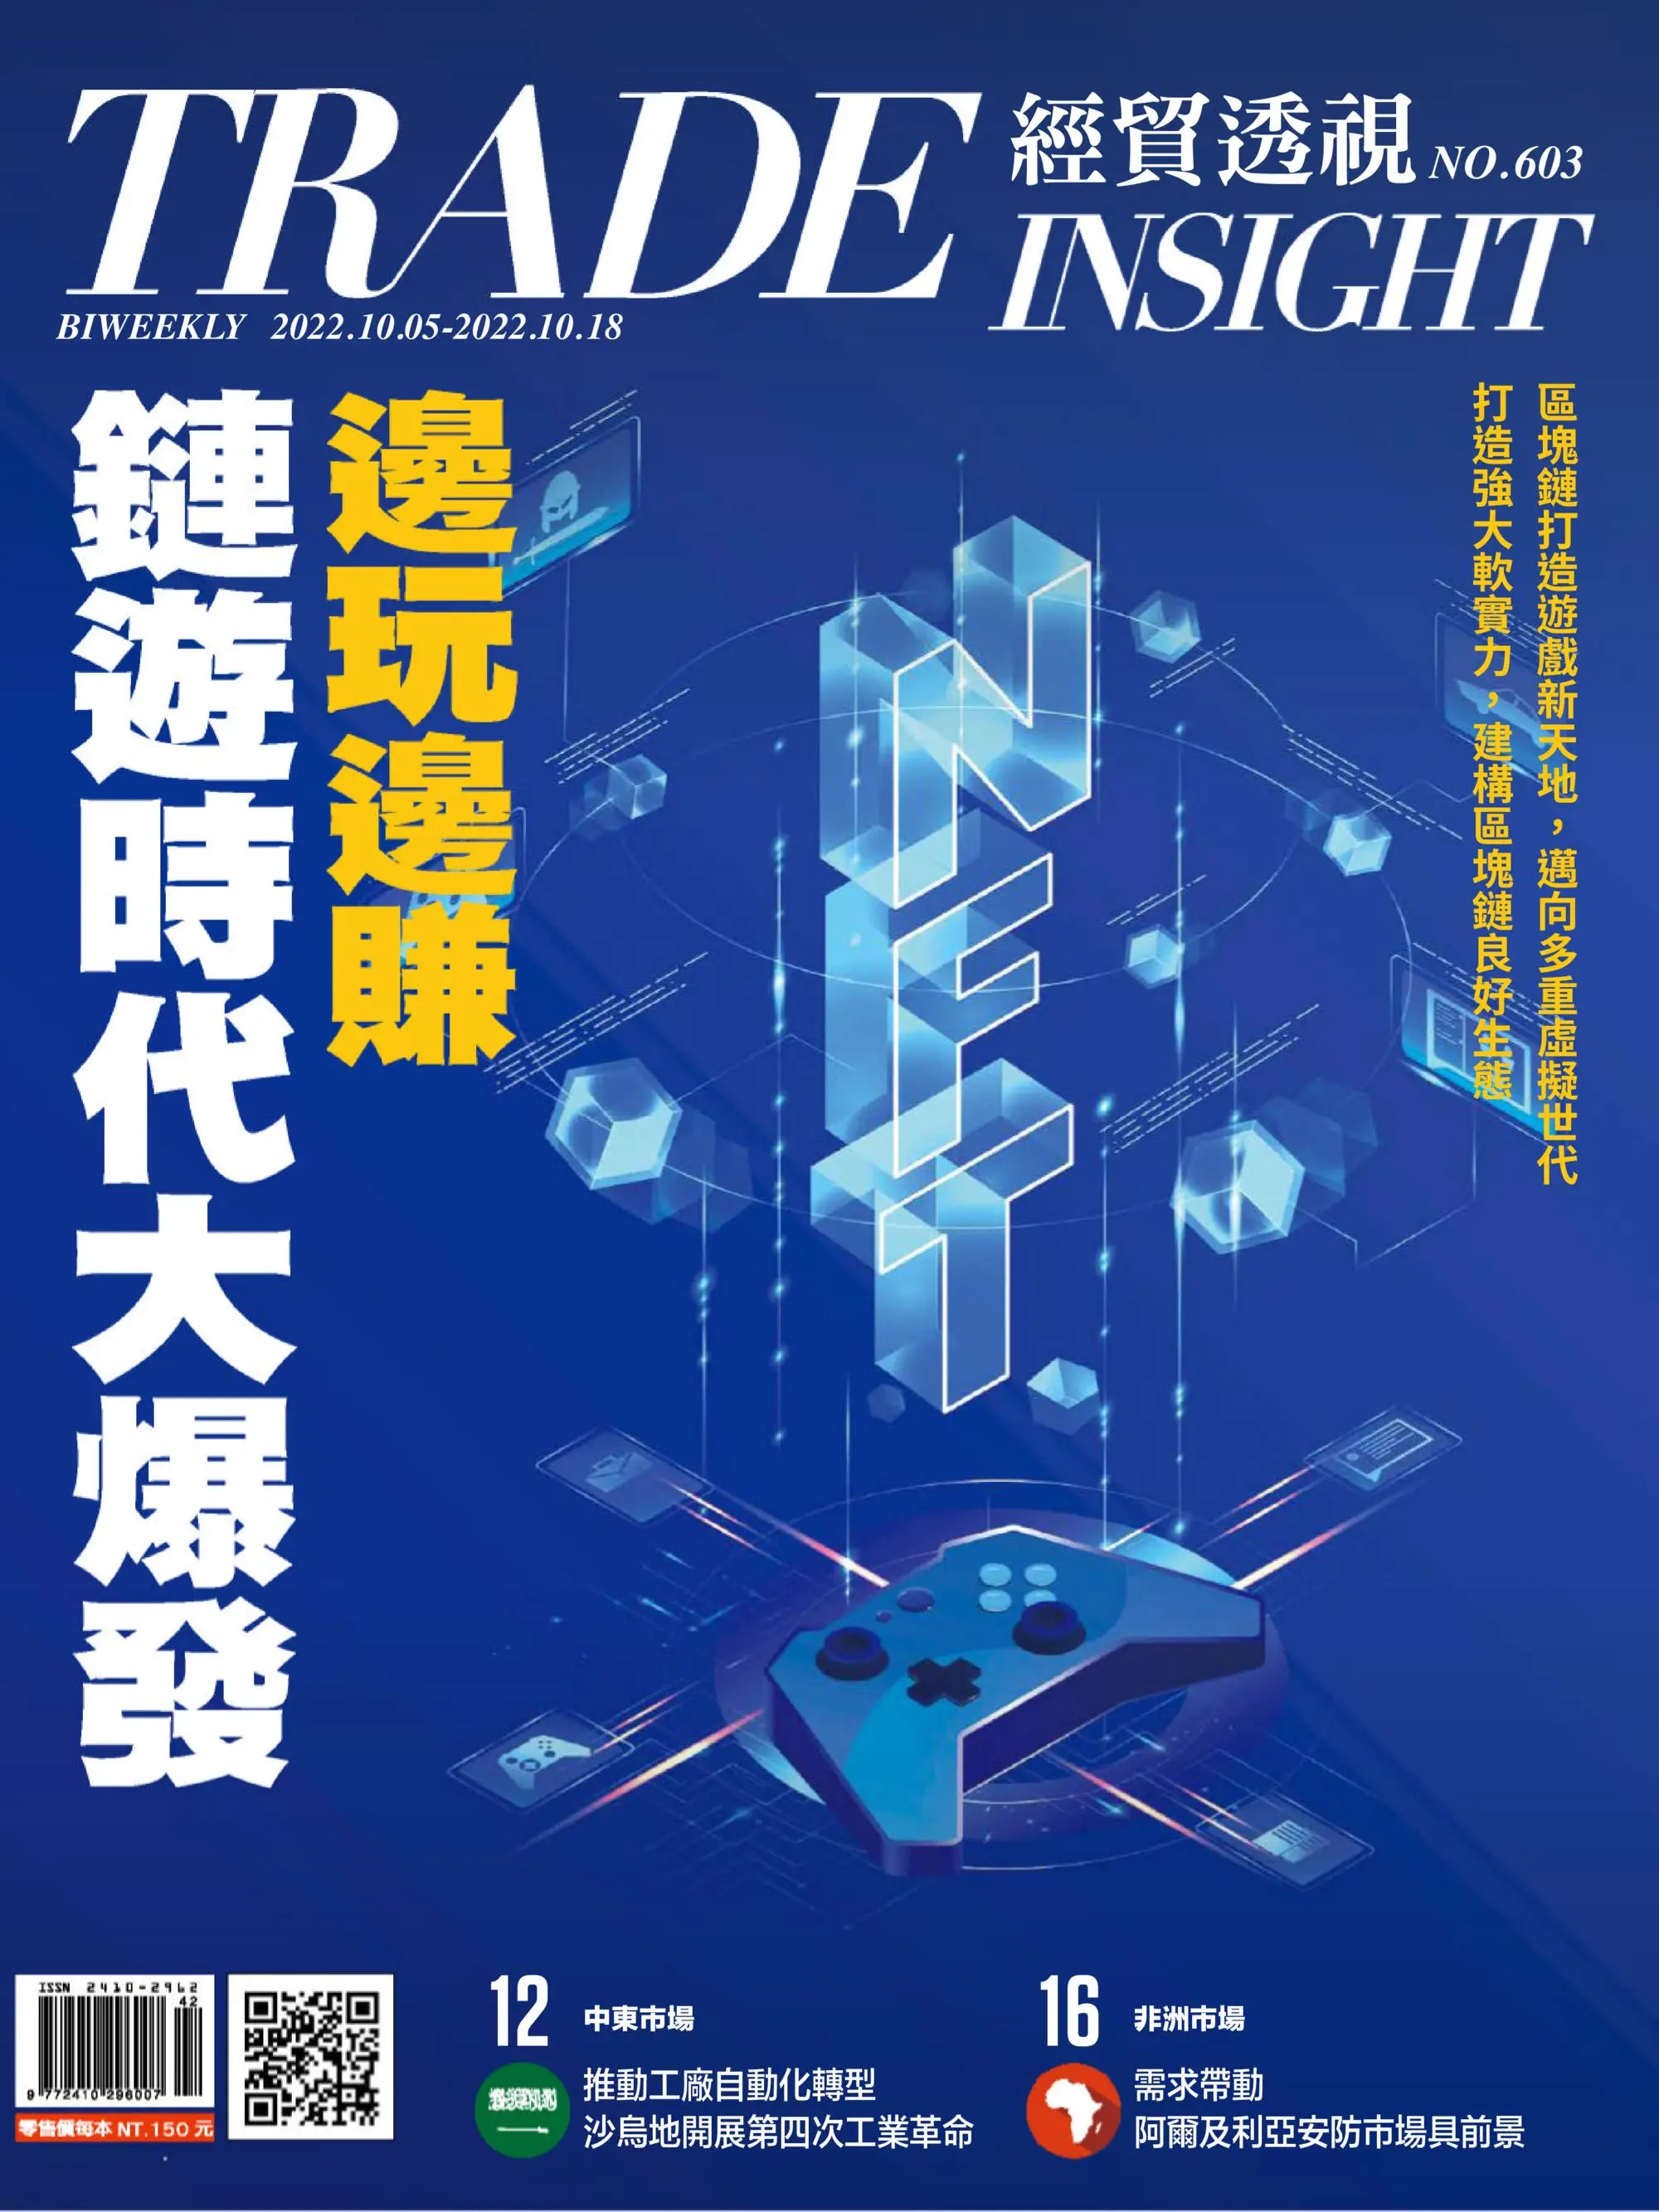 Trade Insight Biweekly 經貿透視雙周刊 2022年10月5日